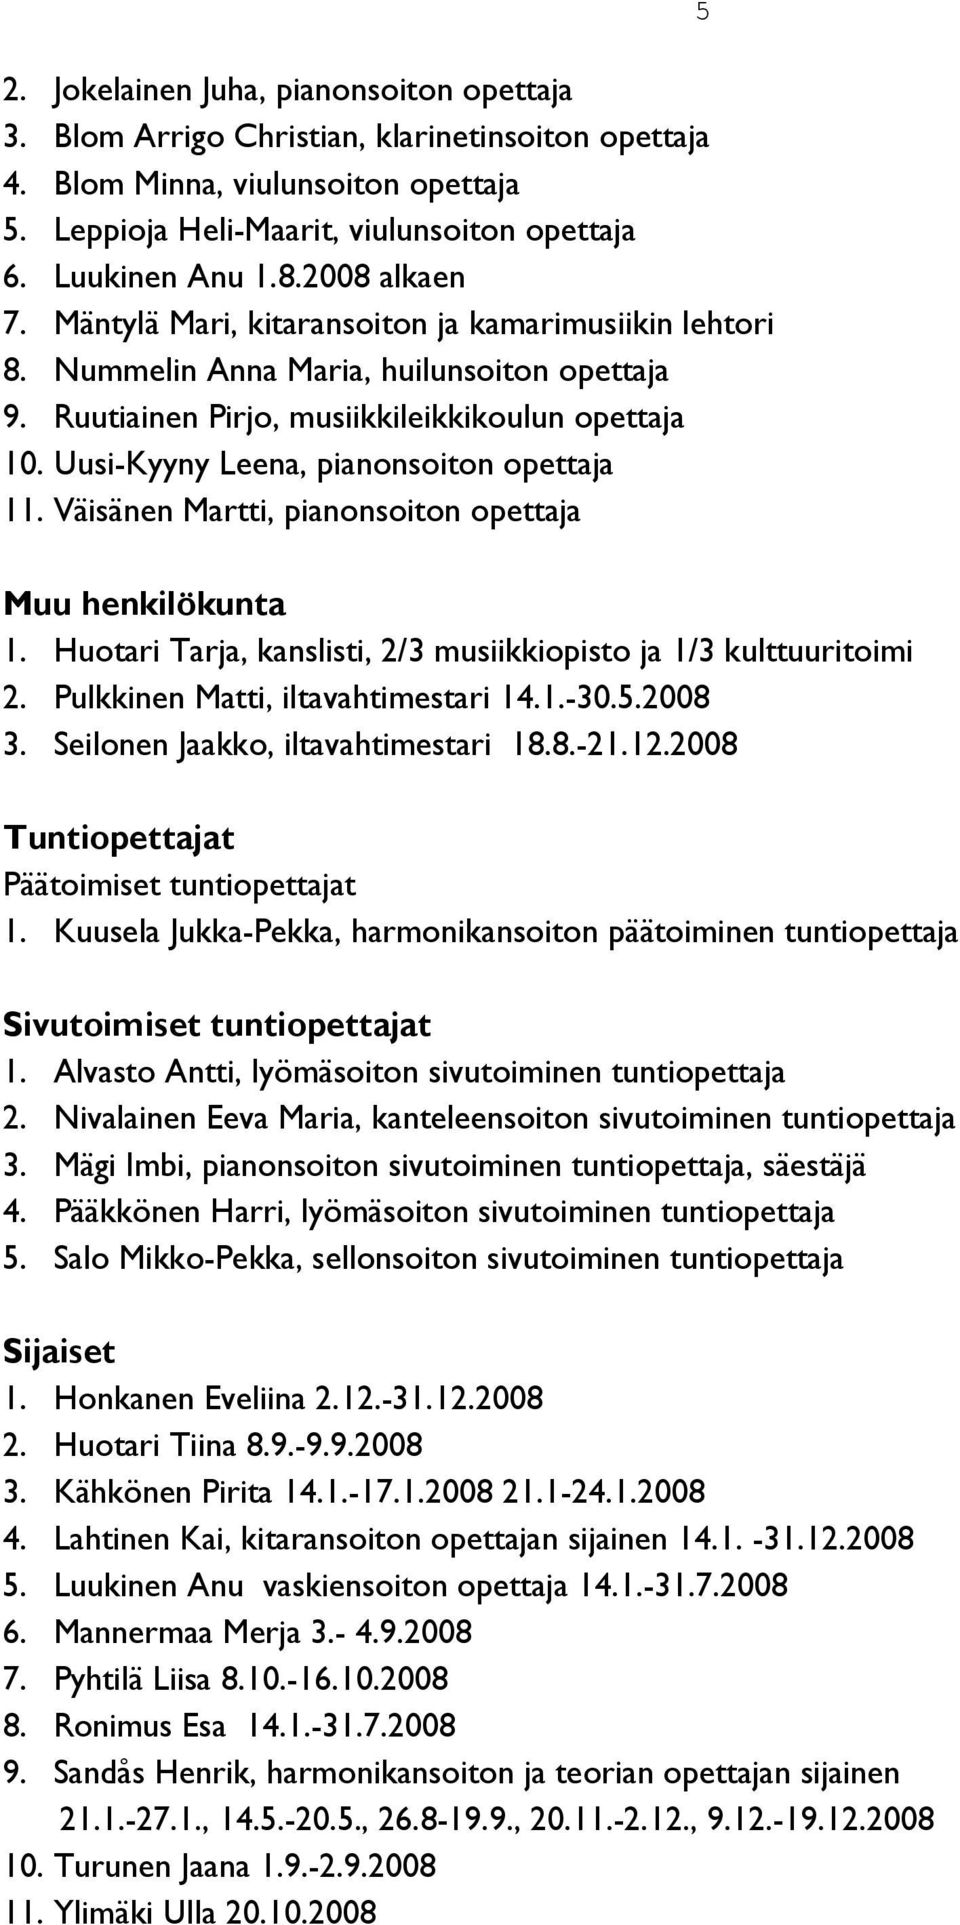 Uusi-Kyyny Leena, pianonsoiton opettaja 11. Väisänen Martti, pianonsoiton opettaja 5 Muu henkilökunta 1. Huotari Tarja, kanslisti, 2/3 musiikkiopisto ja 1/3 kulttuuritoimi 2.